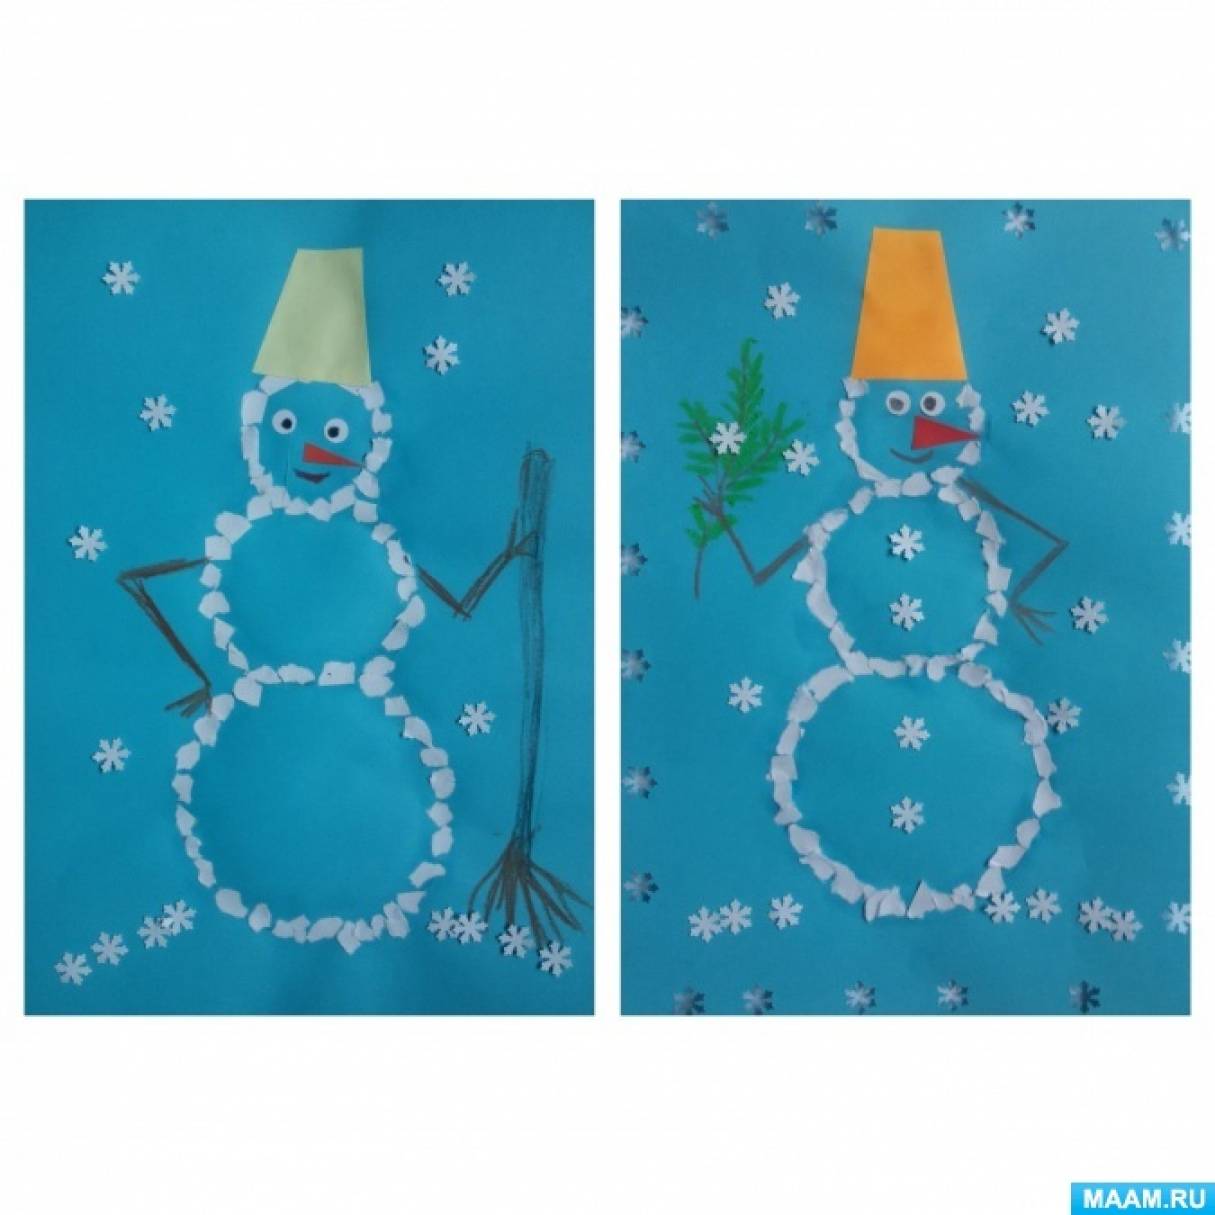 Мастер-класс по обрывной аппликации с элементами рисования «Снеговик» для педагогов старших групп дошкольных учреждений